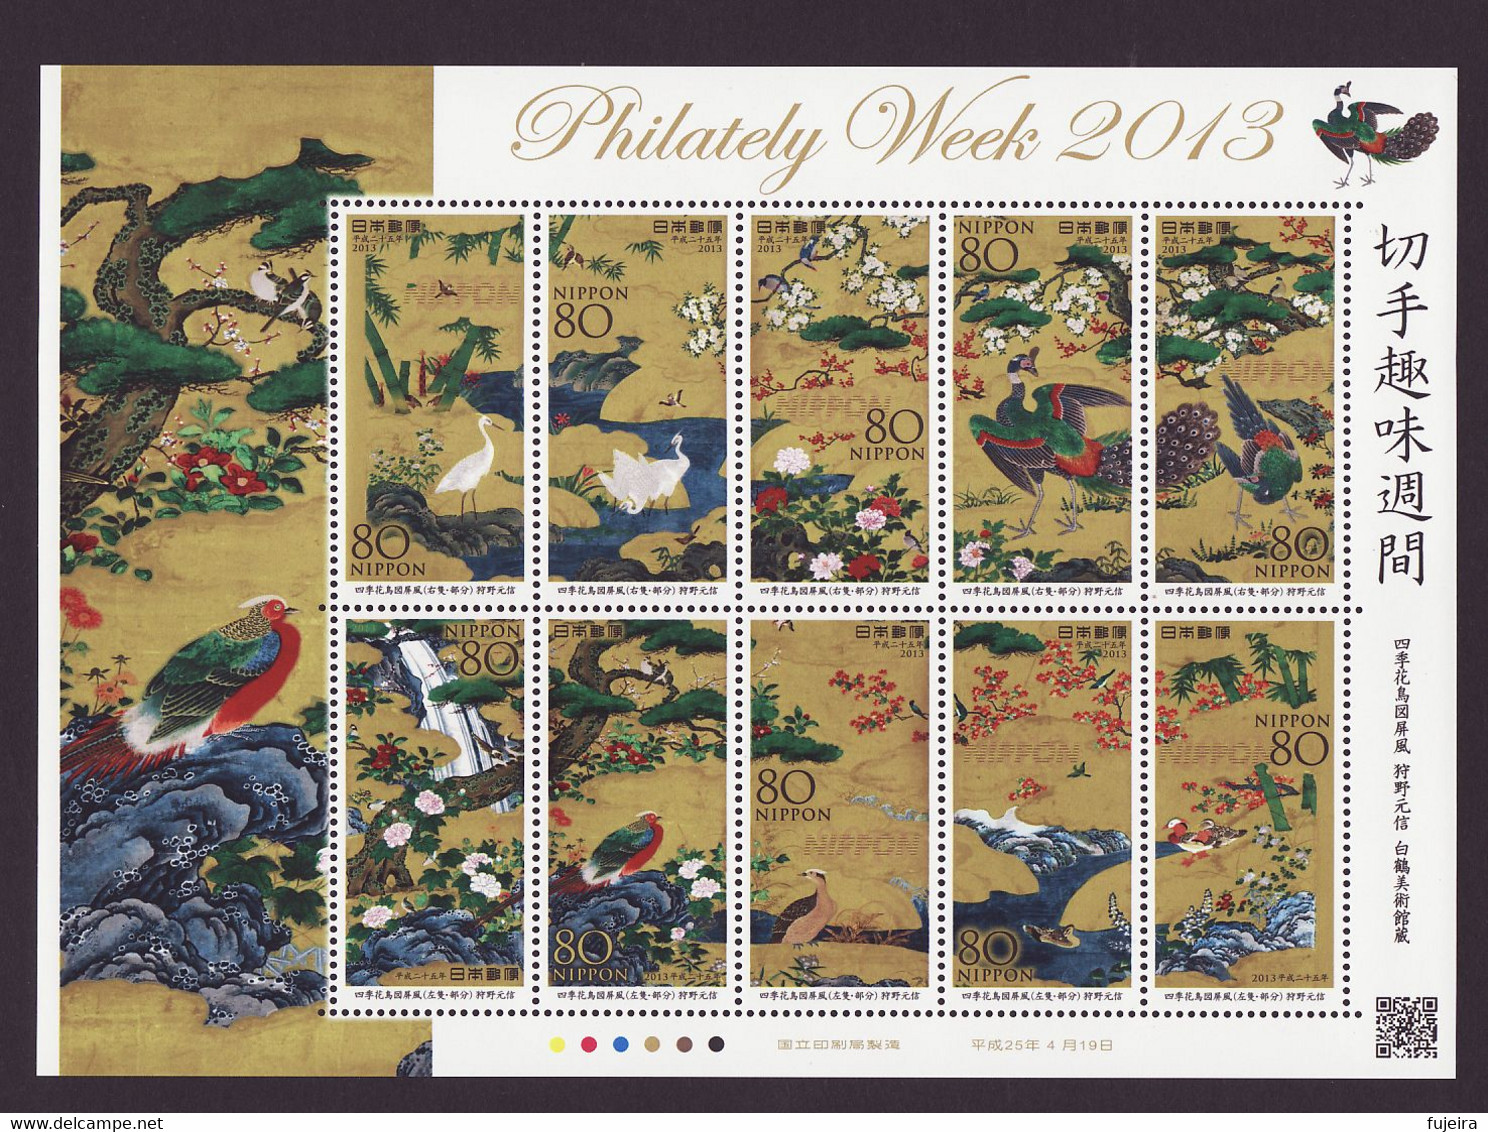 (ja198) Japan 2013 Philately Week Painting Birds Flowers MNH - Nuevos